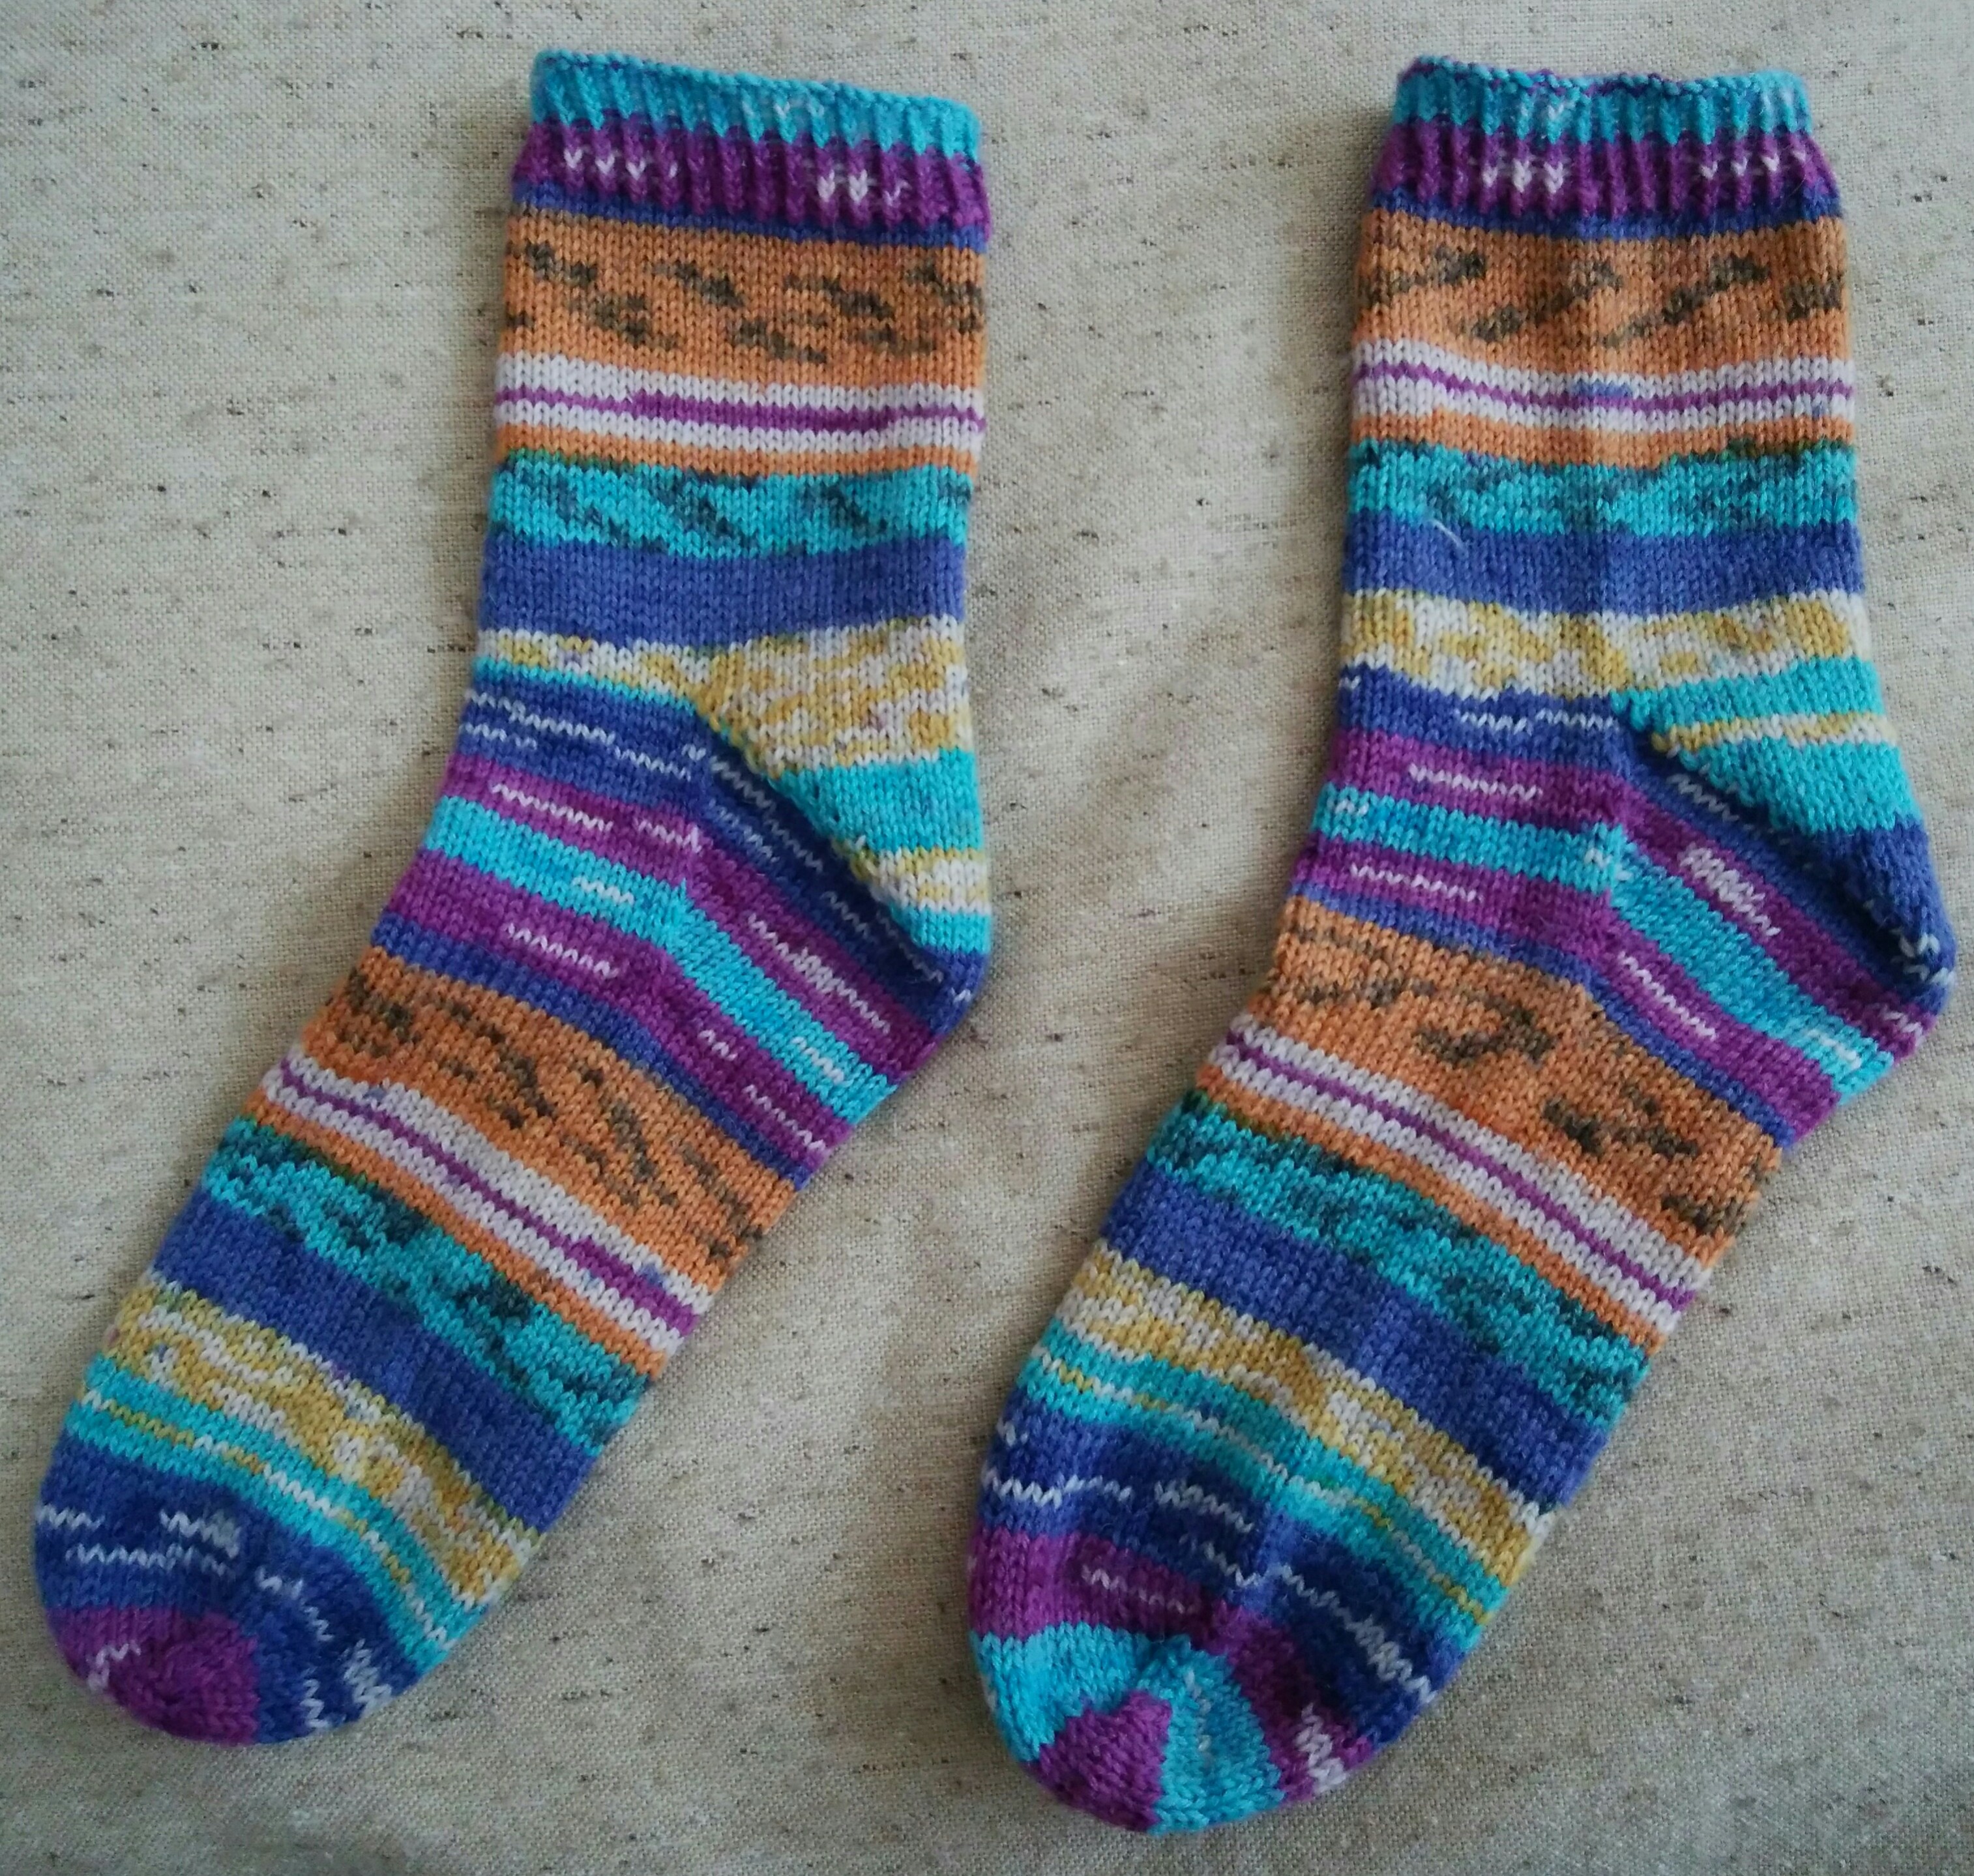 段染毛糸での靴下編みに初挑戦。専用輪針も買いました。 | ニトロのるつぼ